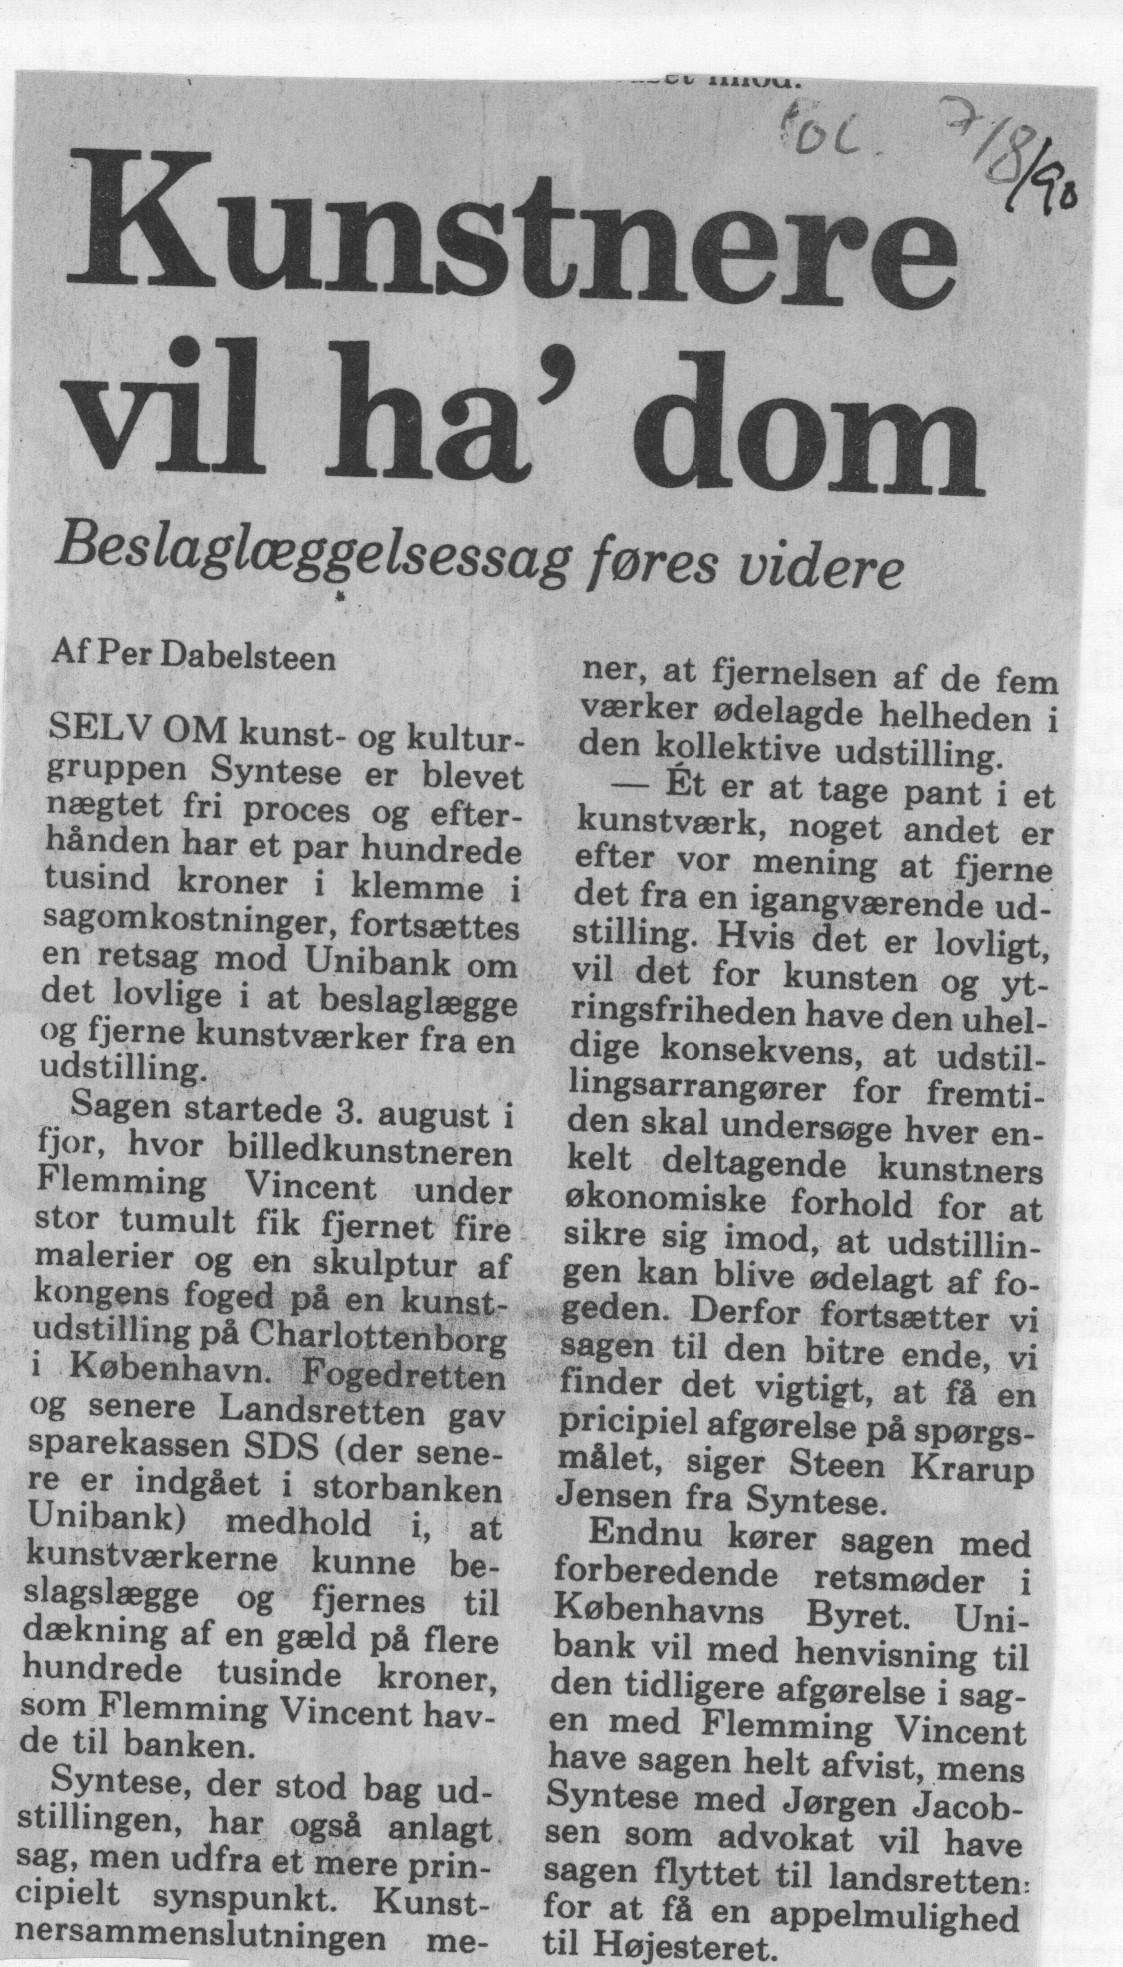 Kunstnere vil ha dom. Omtale (Retssag. Den lange rejse. Charlottenborg 1989, København). Per Dabelsteen. Politiken.